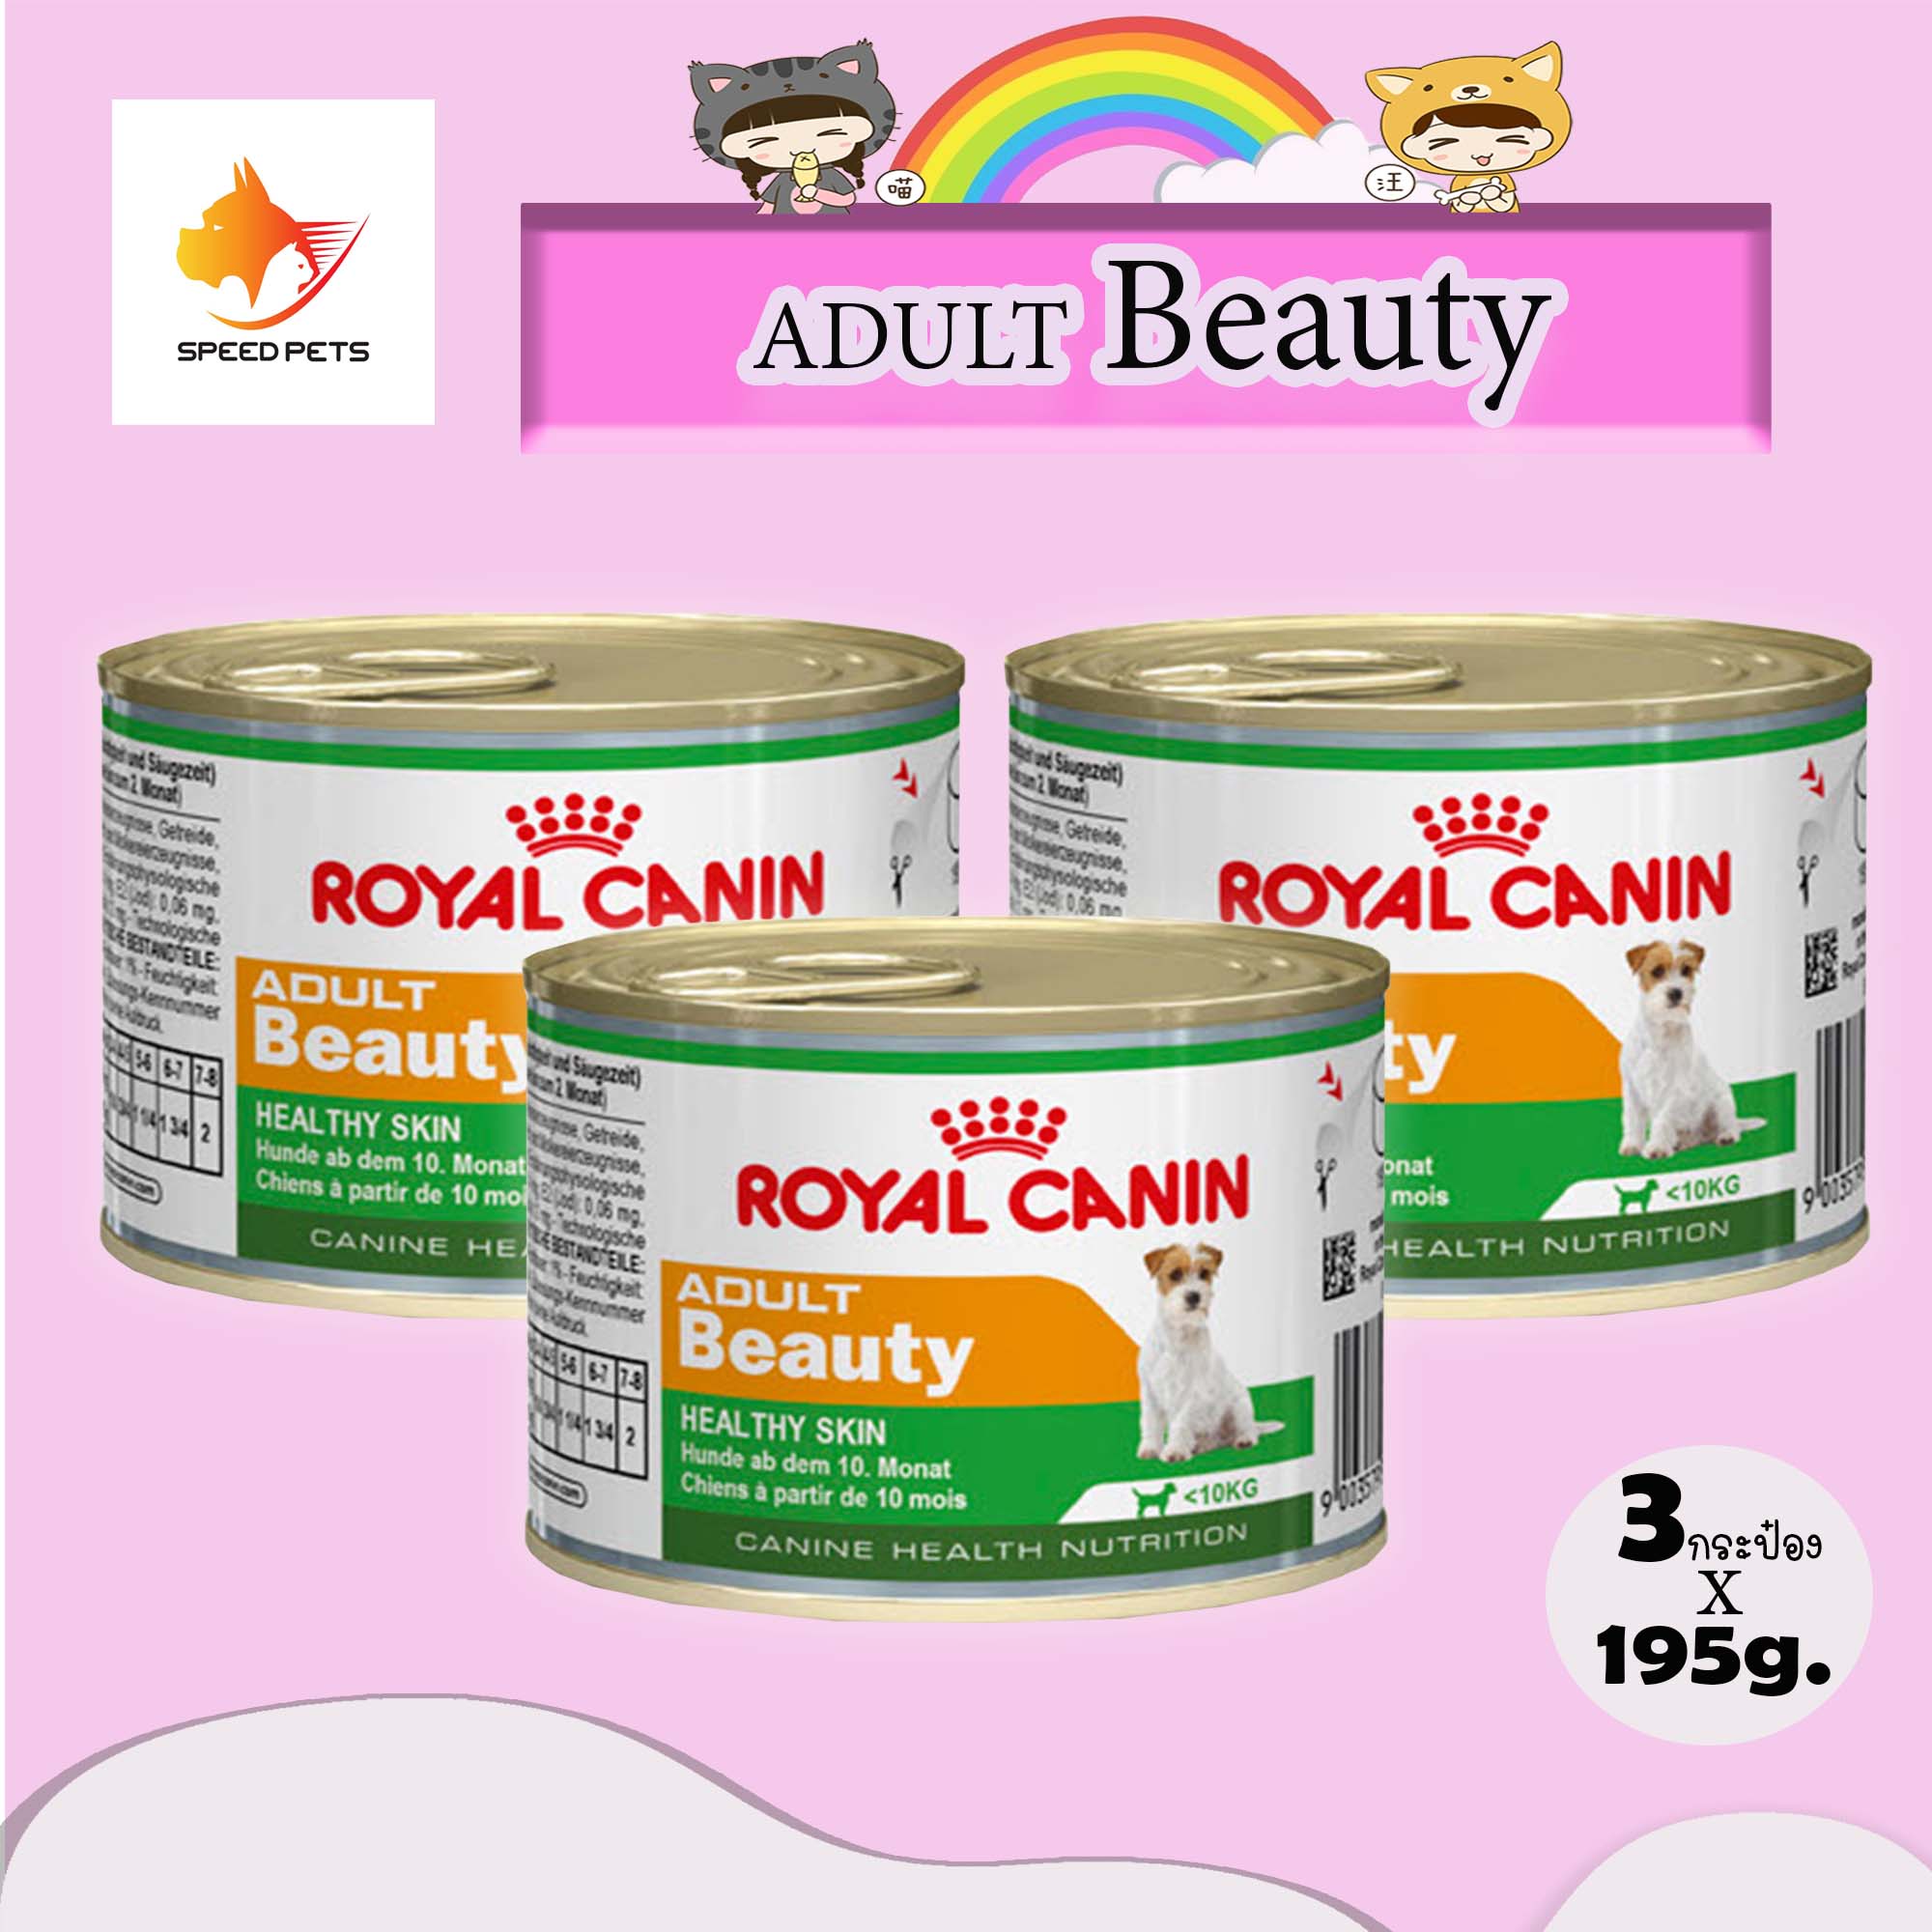 Royal Canin Adult beauty 195g อาหารสุนัข กระป๋อง บำรุงขน 195g x 3 กระป๋อง